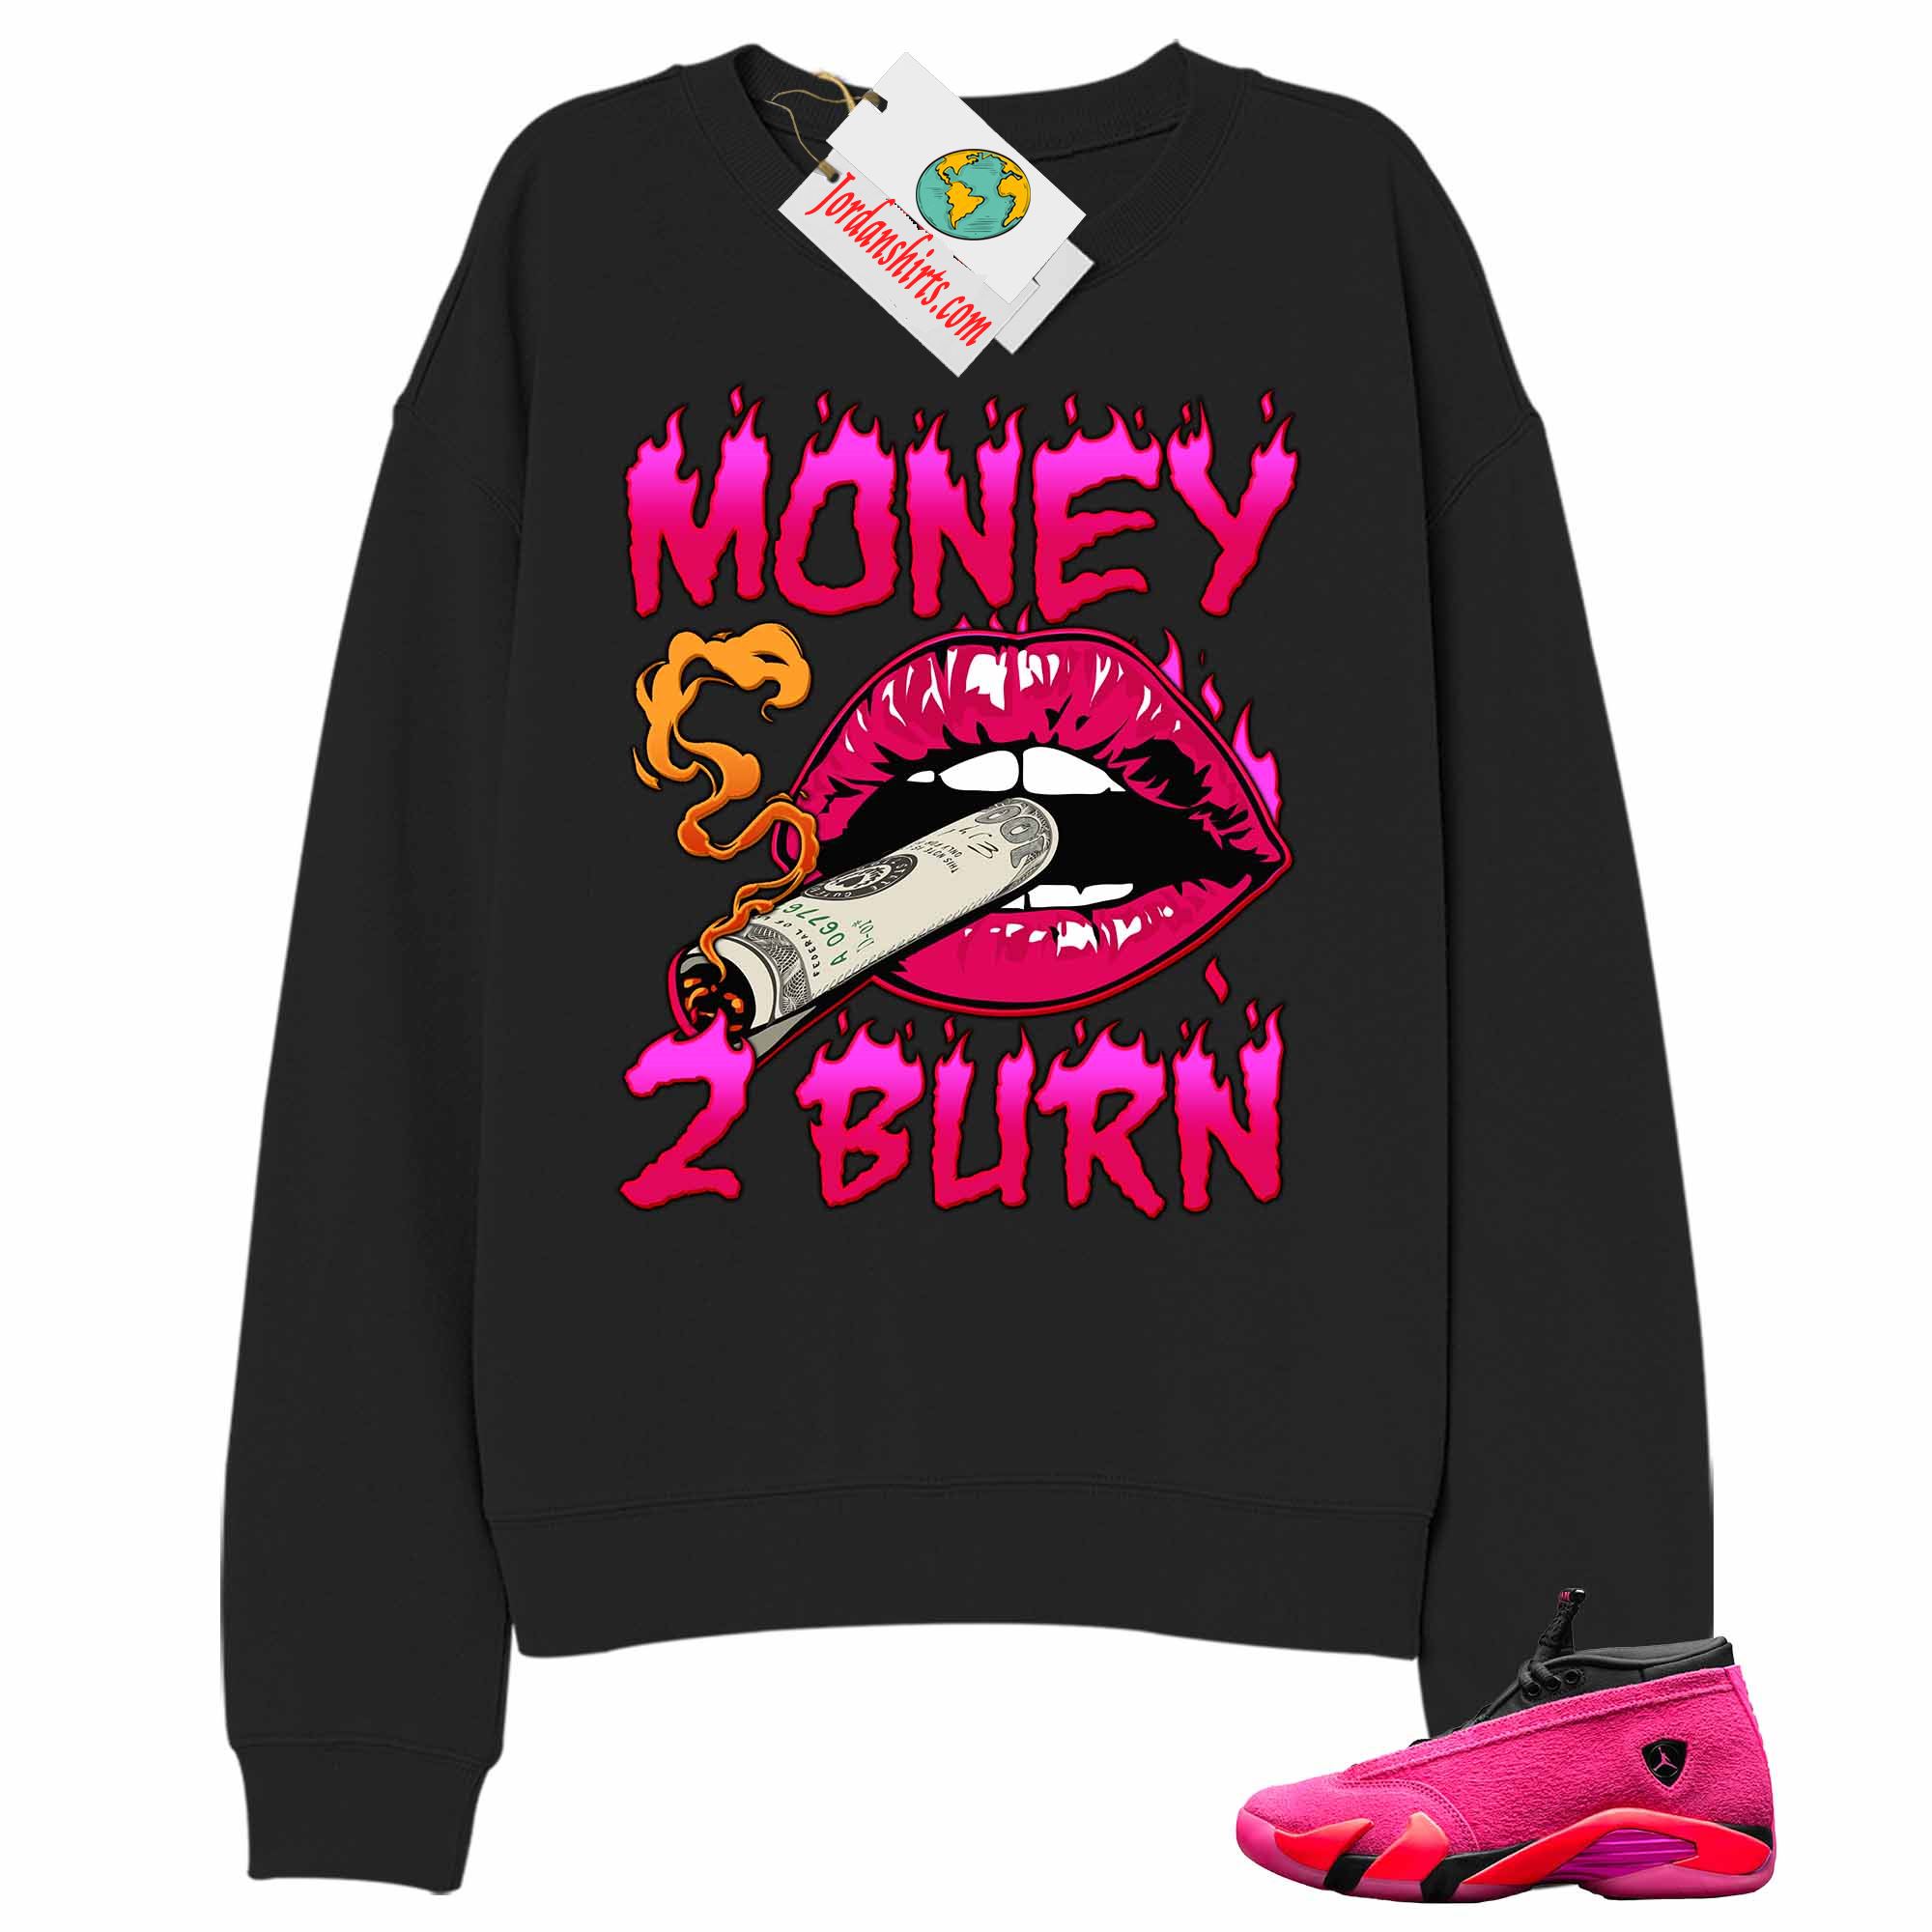 Jordan 14 Sweatshirt, Money To Burn Black Sweatshirt Air Jordan 14 Wmns Shocking Pink 14s Full Size Up To 5xl